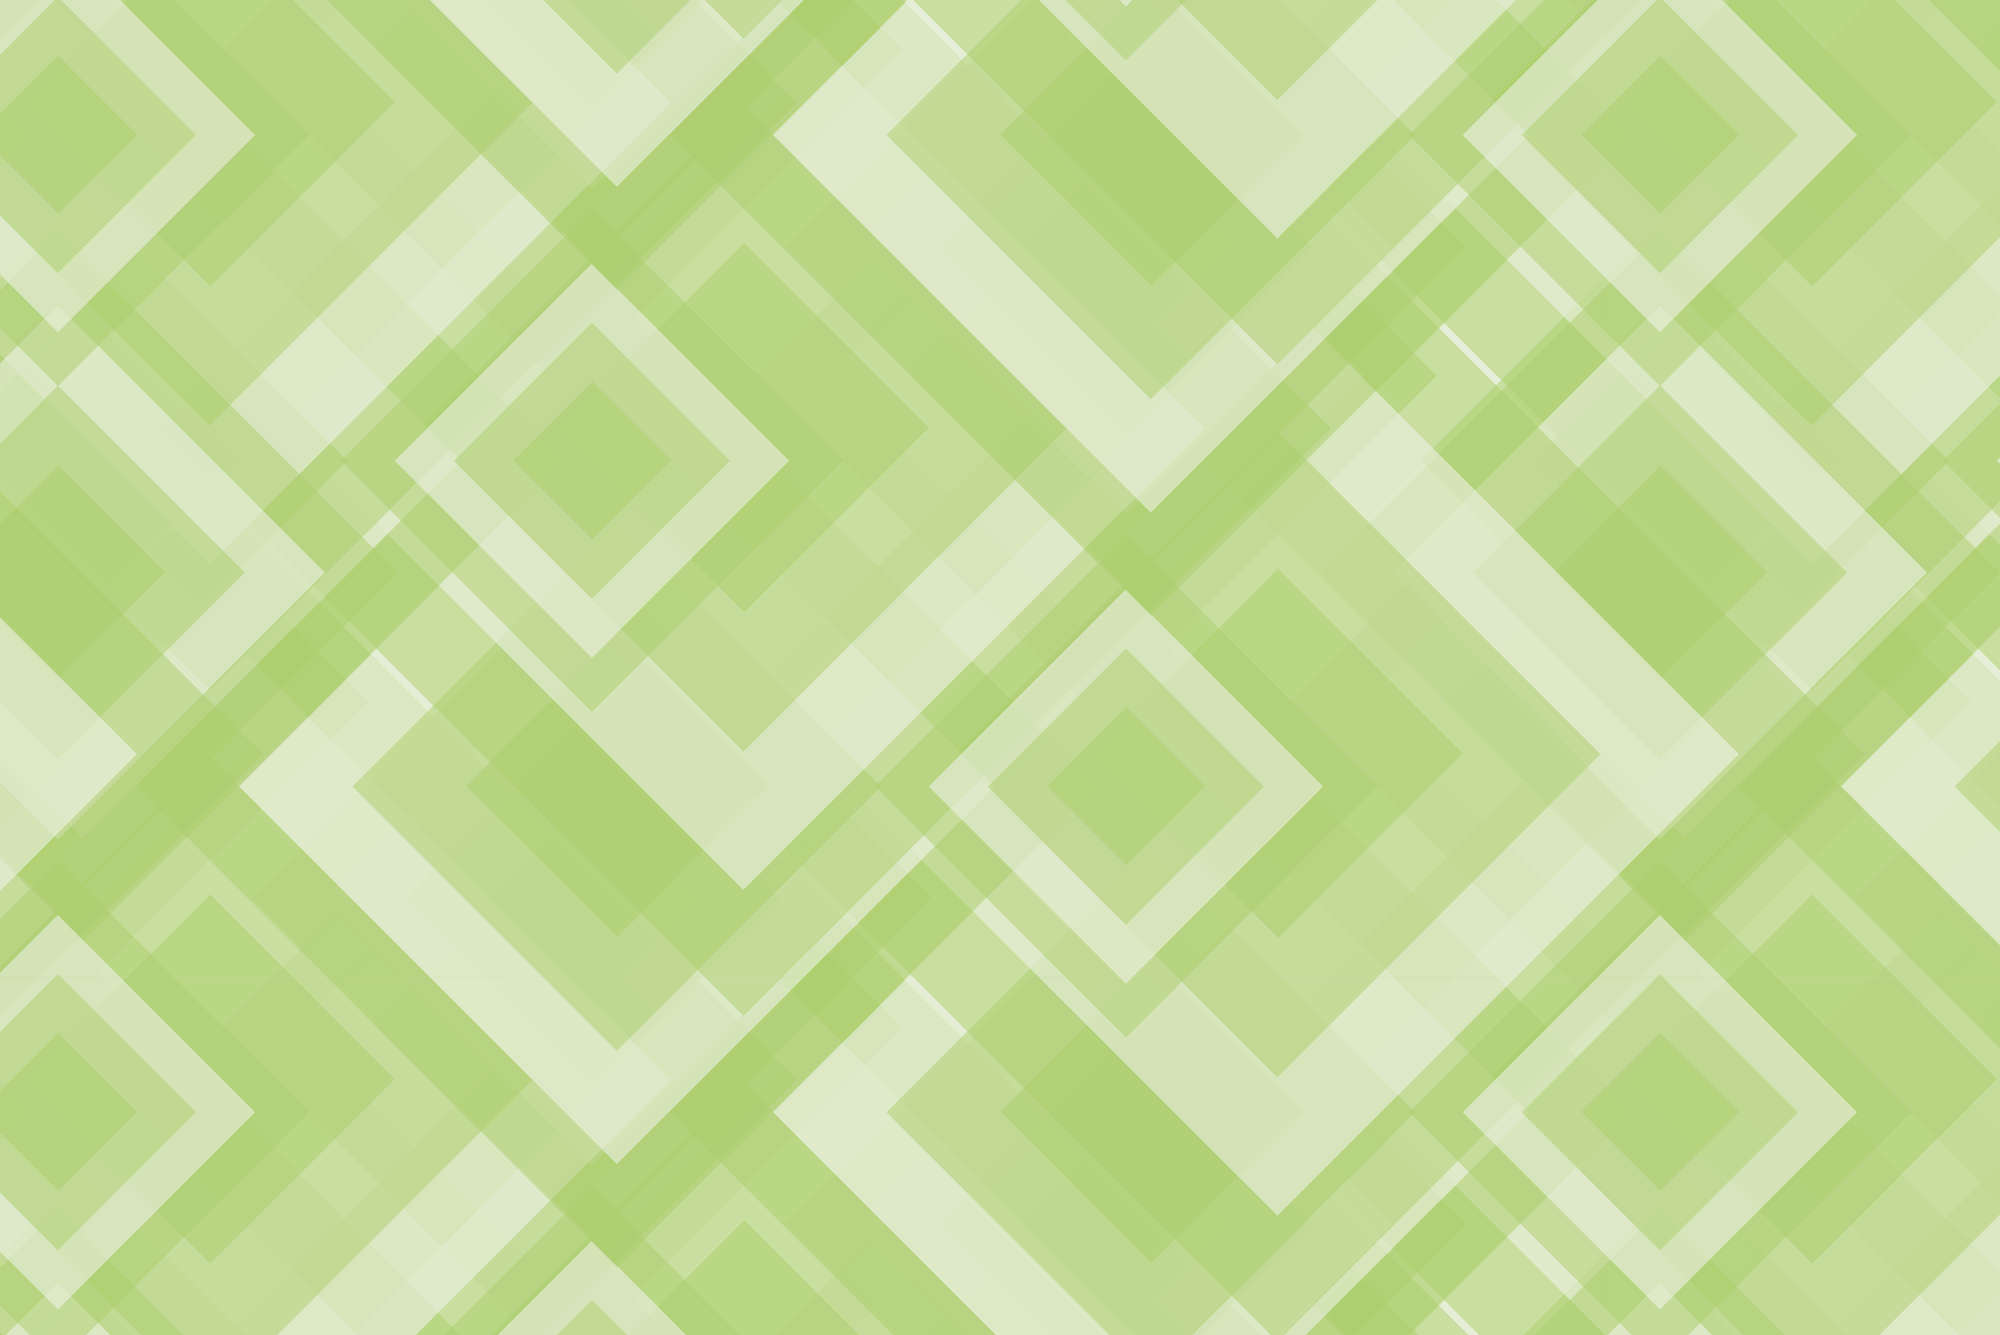             Papier peint panoramique design carrés se chevauchant vert sur intissé lisse premium
        